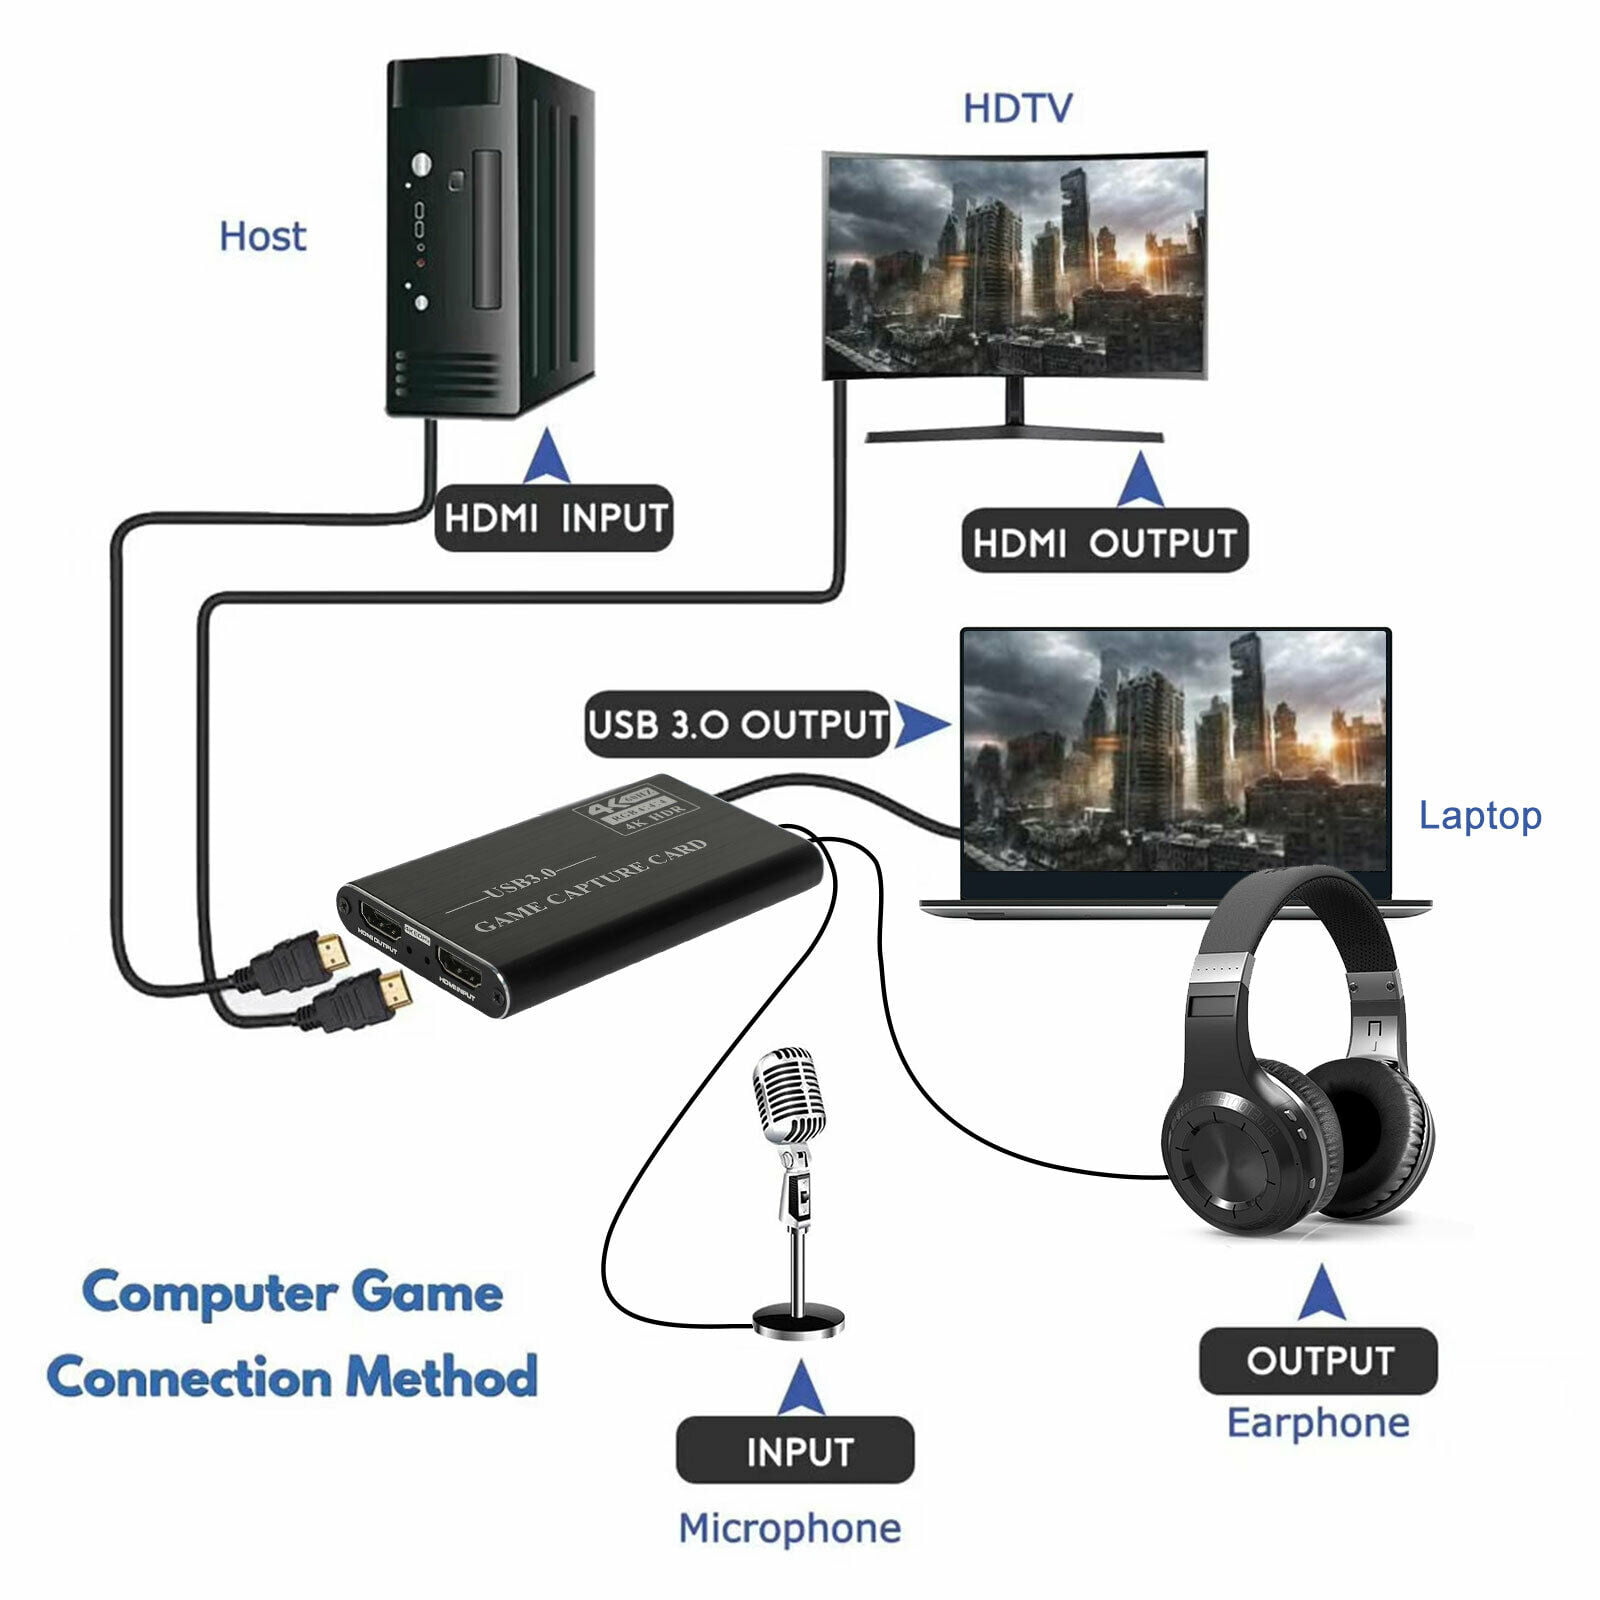 Carte d'acquisition Externe, Lemorele Capture Card USB 3.0, Streaming et  Enregistrement en 1080p60 à Ultra Faible Latence sur PS5, PS4/Pro, Xbox